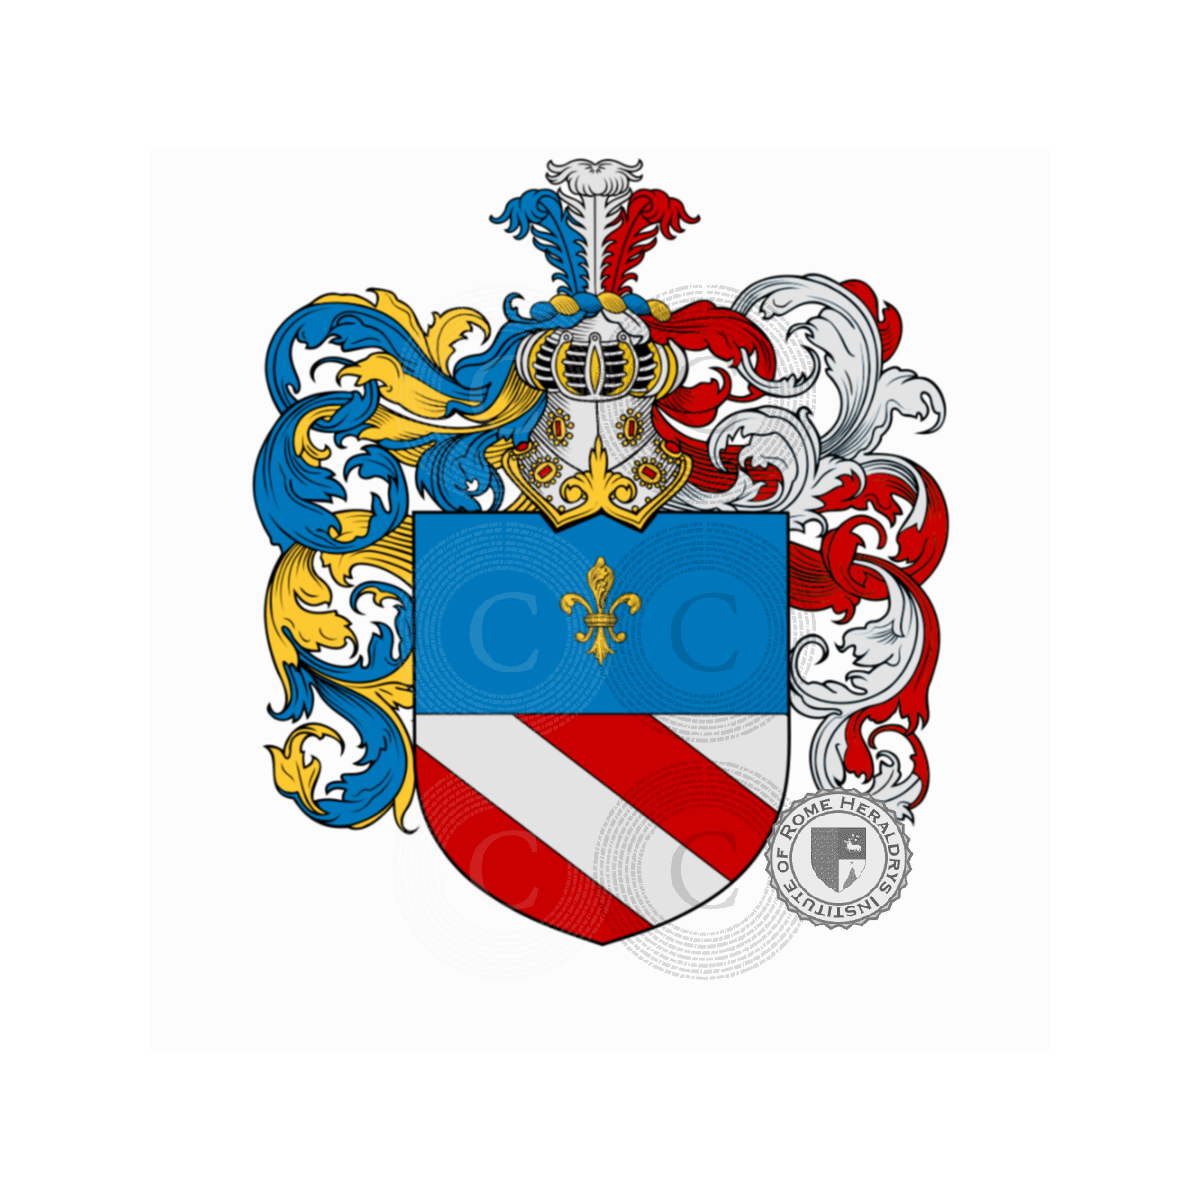 Escudo de la familiaPadovani, Padovani,Pavanini